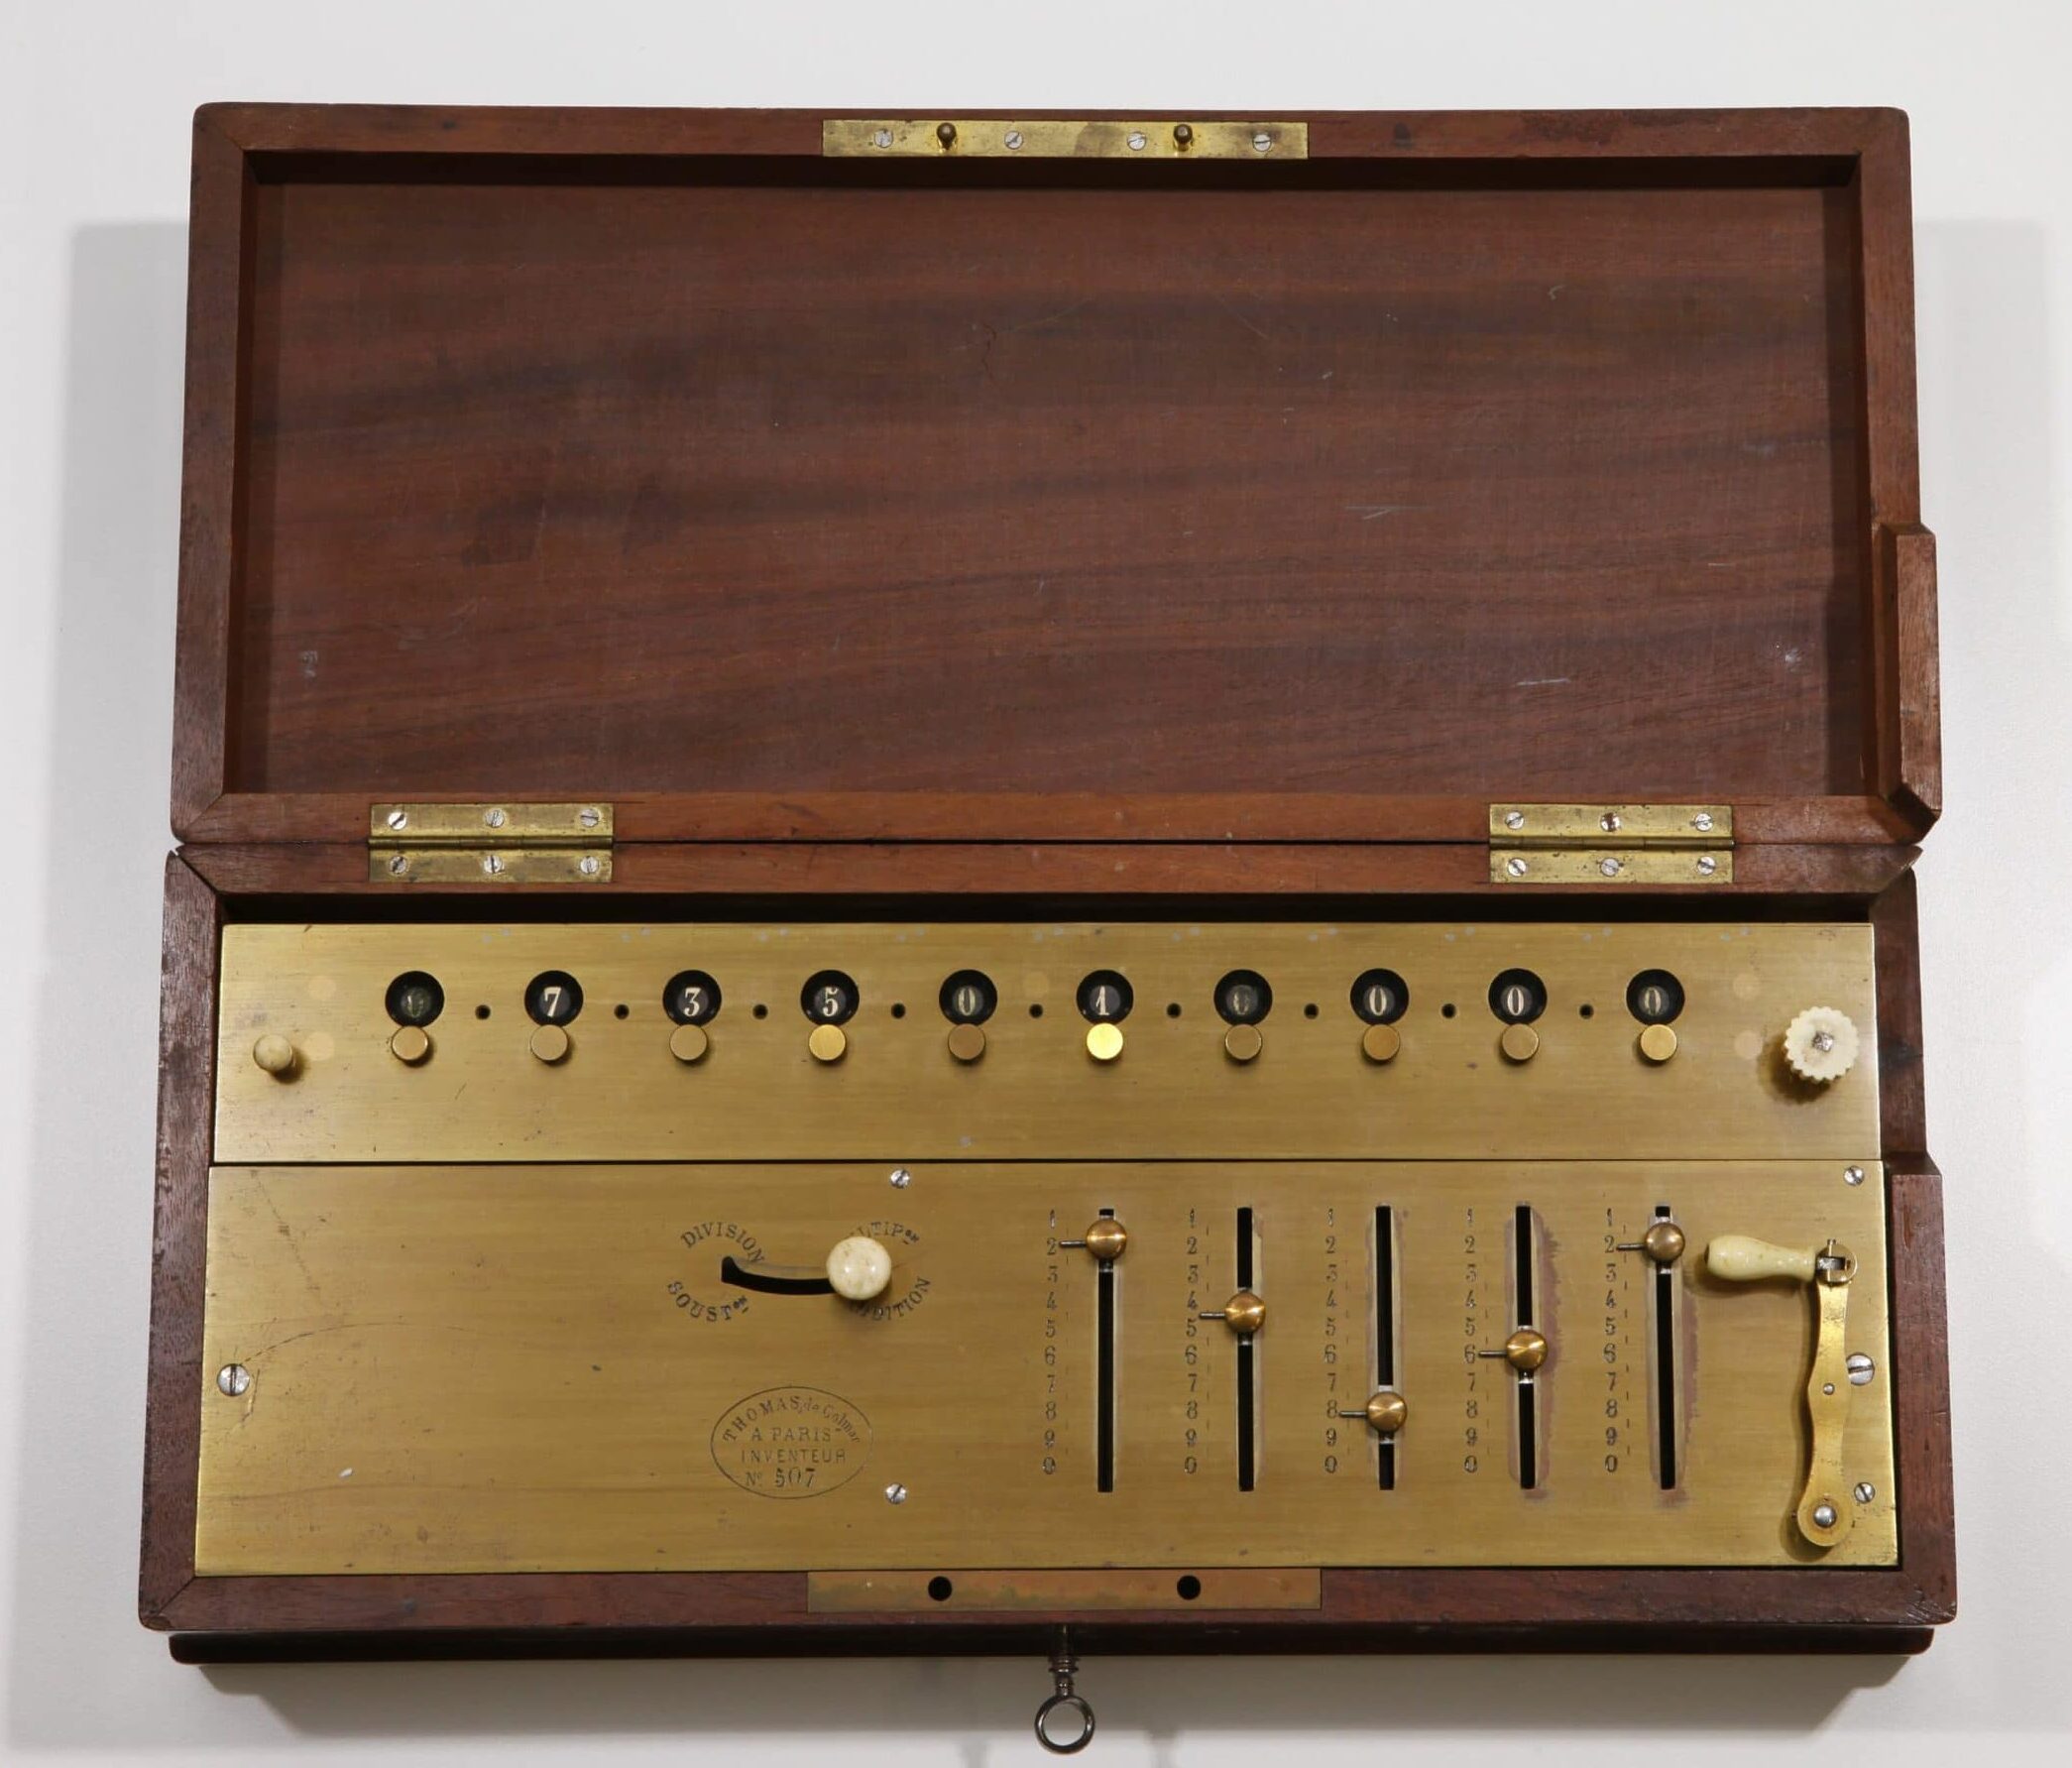 An arithmometer in a protective wooden case, circa 1863. (<a href="http://doi.org/10.21264/ethz-a-000000326">Public domain image courtesy of Sammlung wissenschaftlicher Instrumente und Lehrmittel, ETH-Bibliothek, ETH Zürich</a>.)